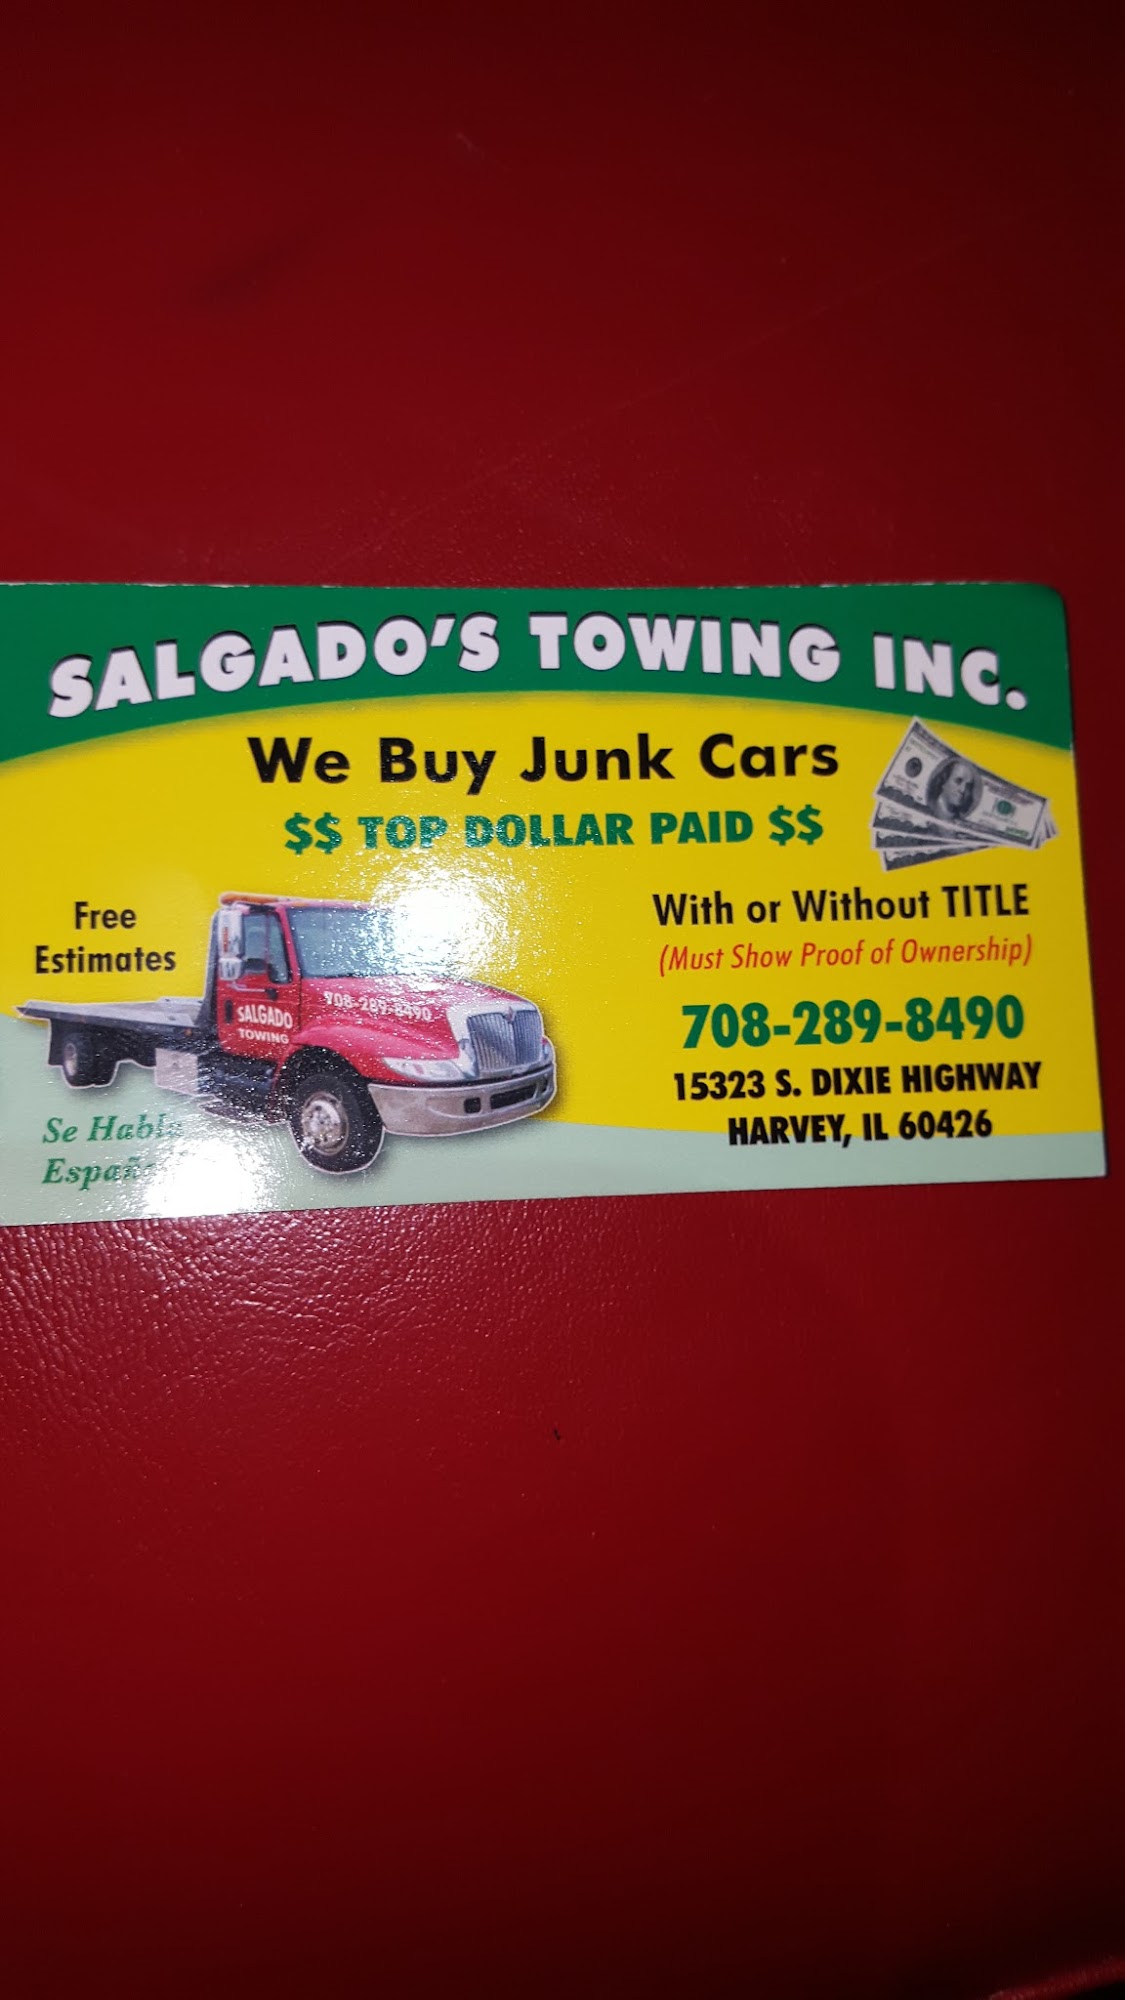 Salgado's Towing